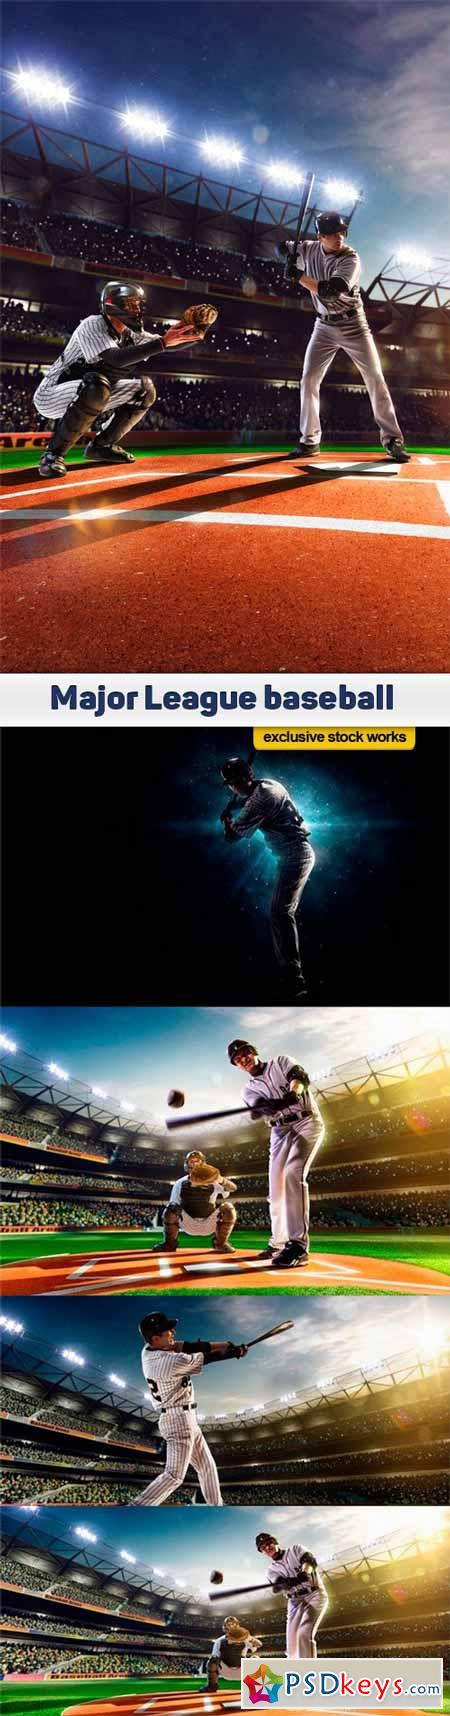 Major League baseball - 5 UHQ JPEG